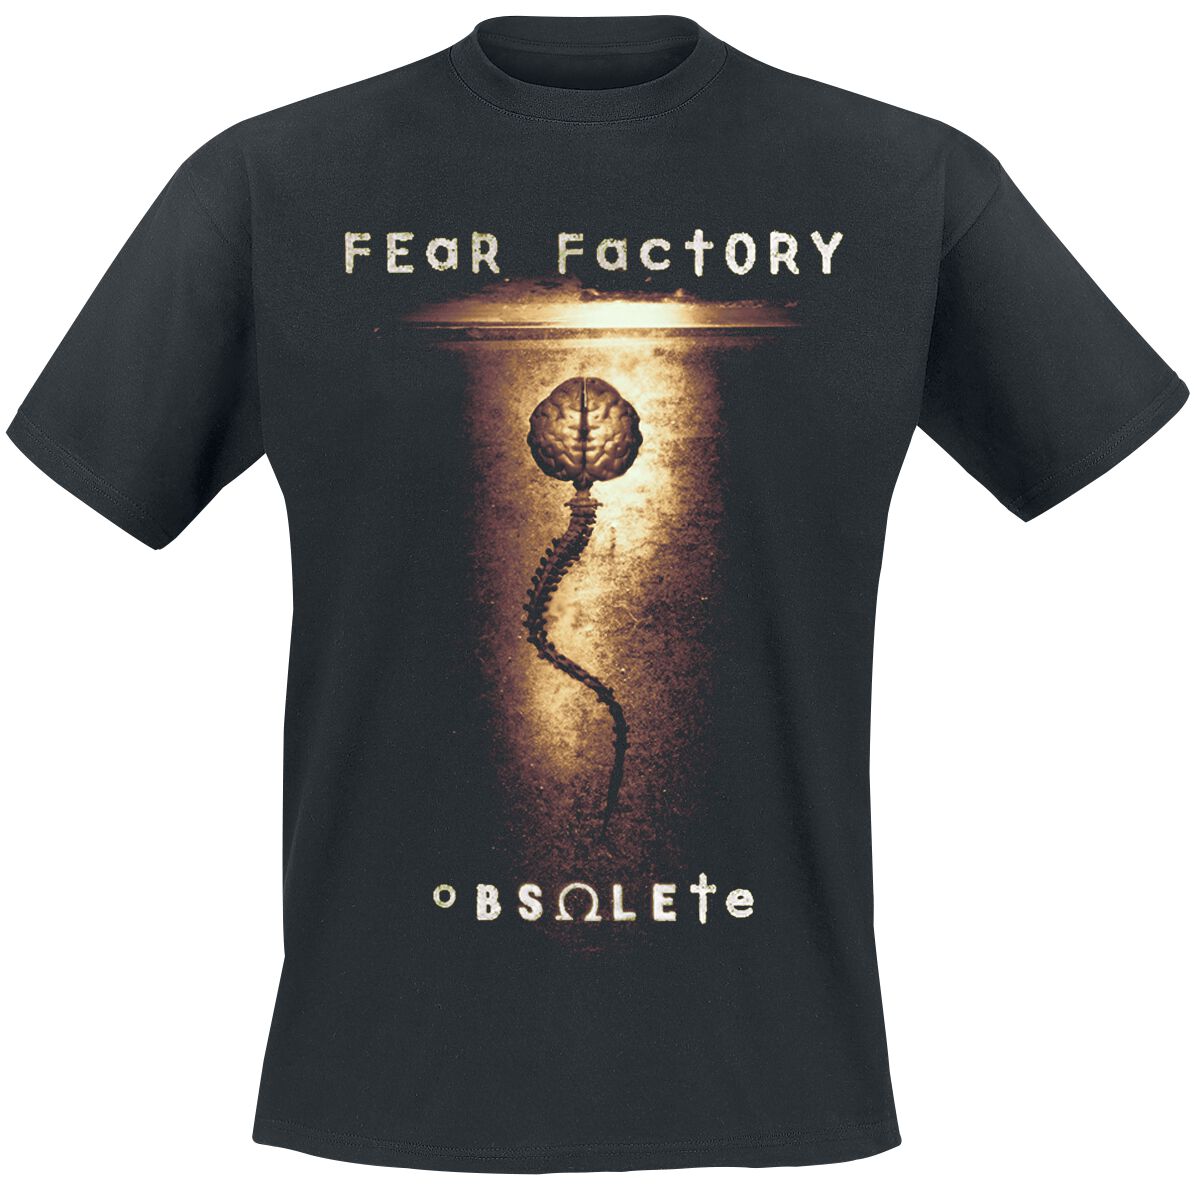 Fear Factory Obsolete T-Shirt black